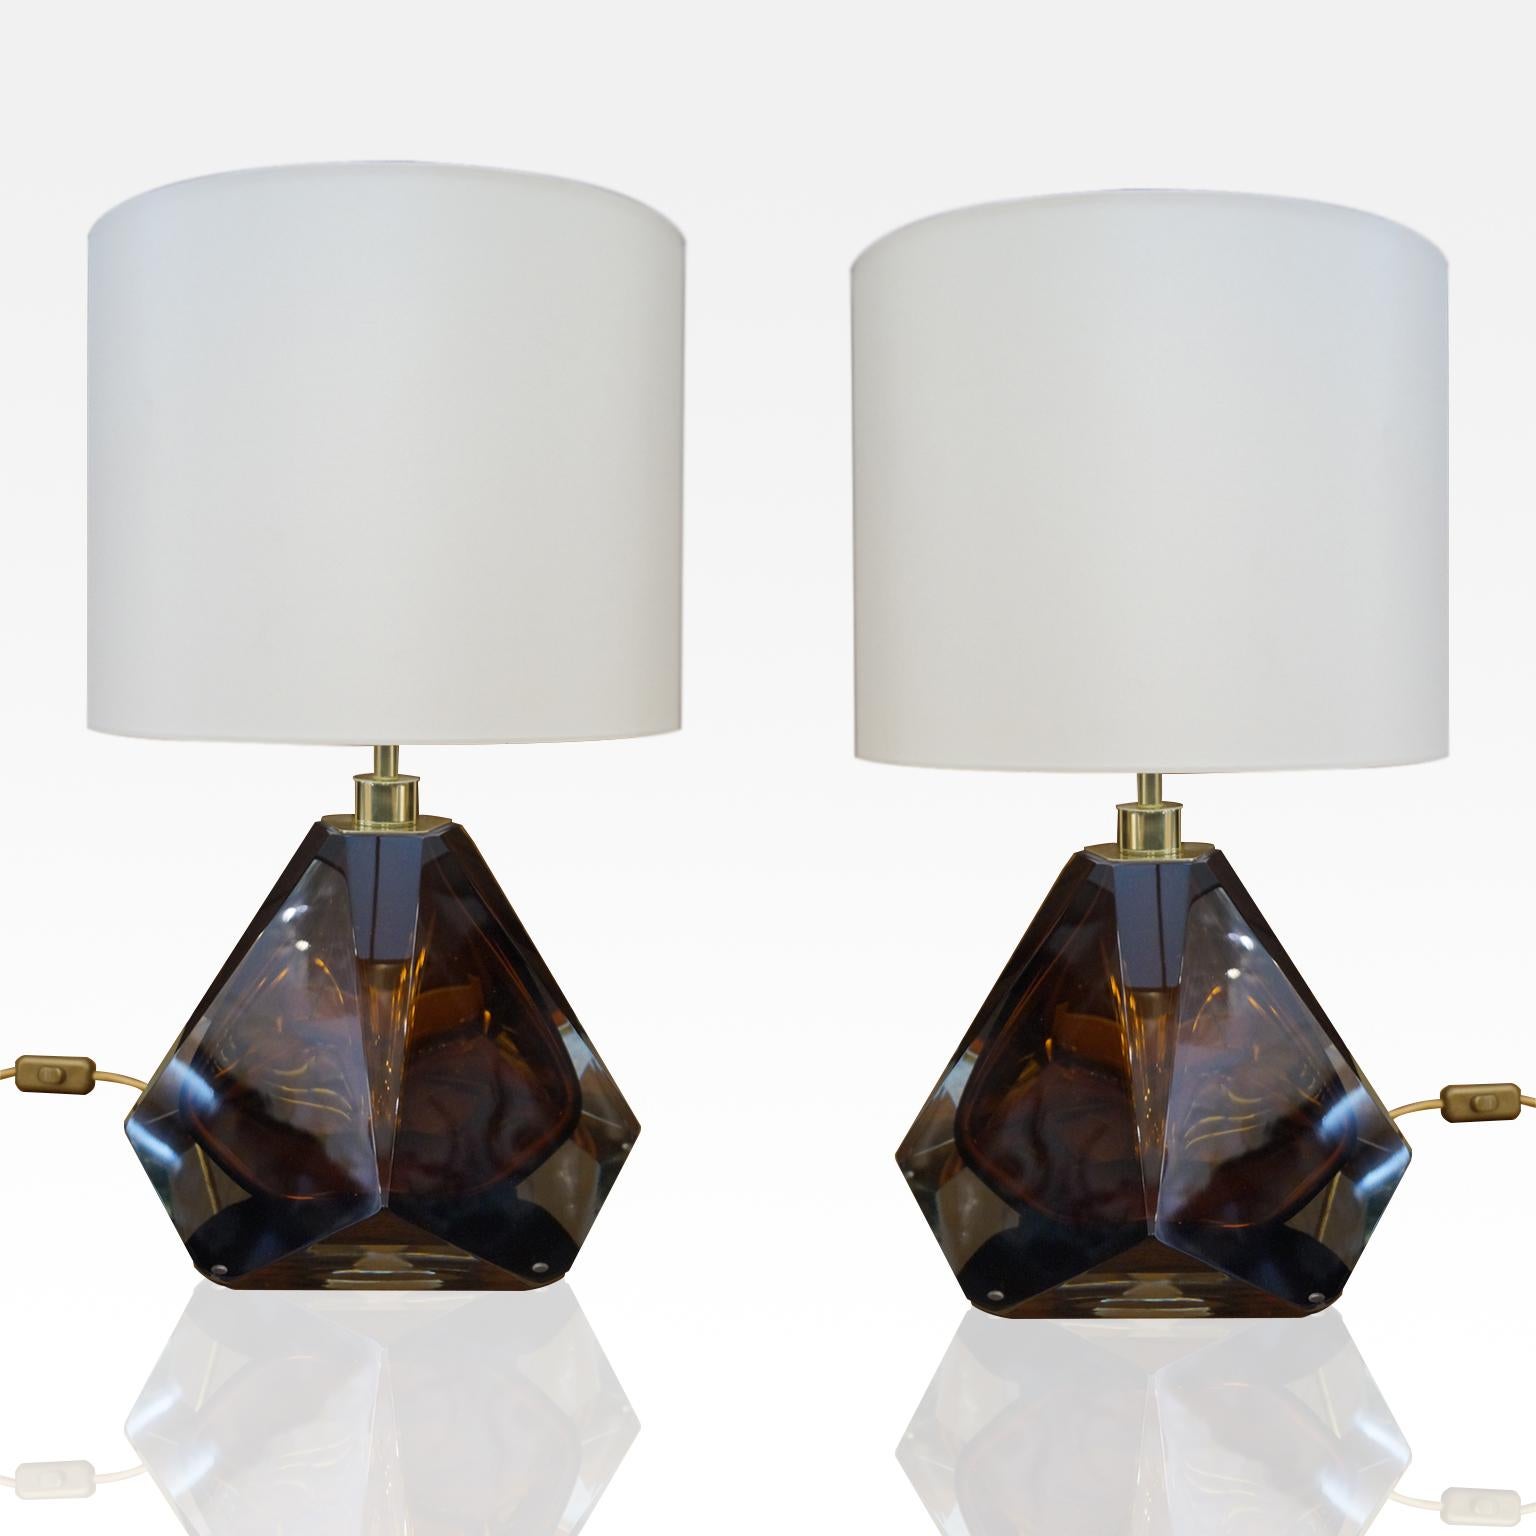 Diese Tischlampe ist Teil der Kollektion des Glasmeisters Alberto Donà, die drei Lampen in verschiedenen Größen umfasst, die 